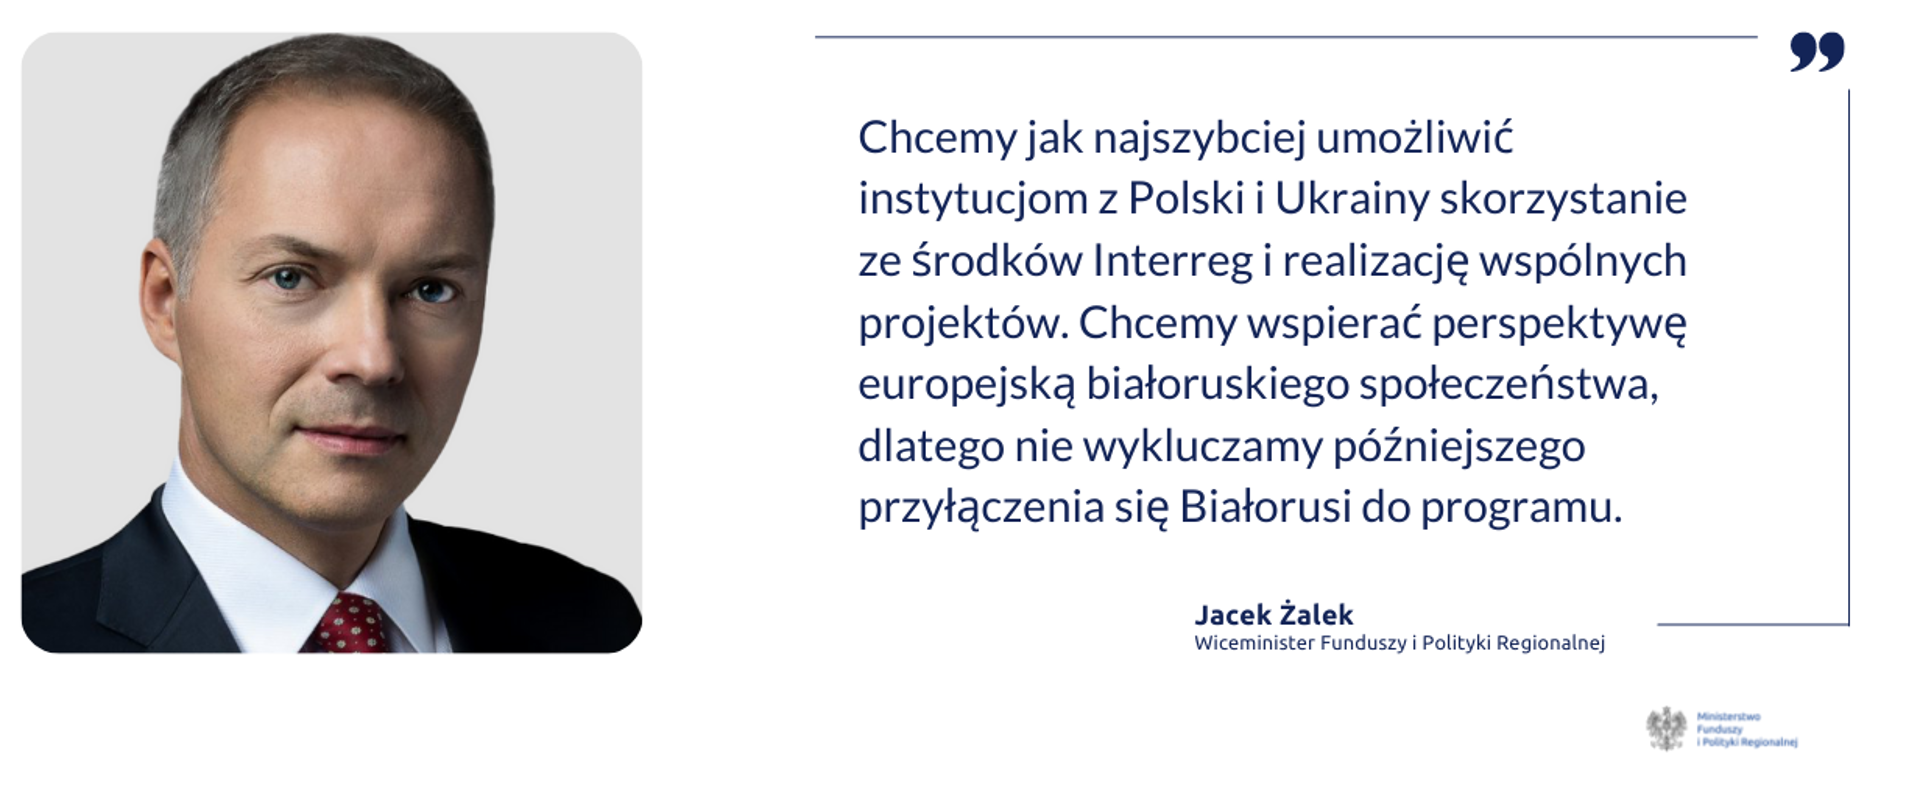 Po lewej zdjęcie wiceministra Jacka Żalka. Obok cytat: "Chcemy jak najszybciej umożliwić instytucjom z Polski i Ukrainy skorzystanie ze środków Interreg i realizację wspólnych projektów. Chcemy wspierać perspektywę europejską białoruskiego społeczeństwa, dlatego nie wykluczamy późniejszego przyłączenia się Białorusi do programu."